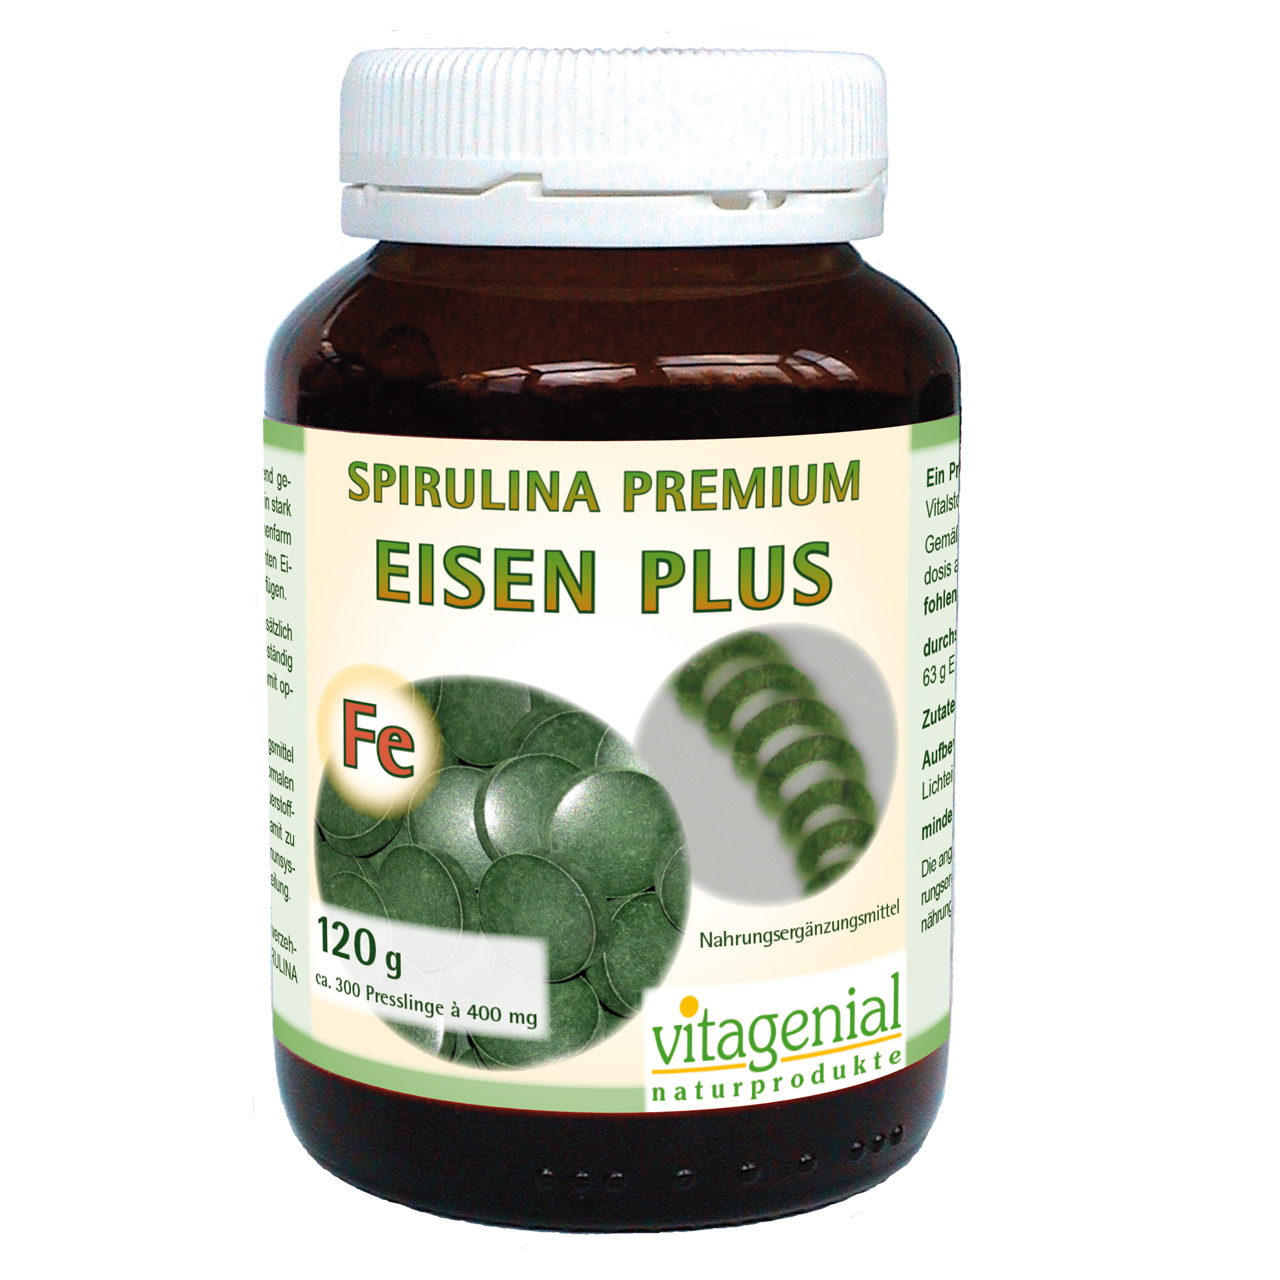 Vitagenial Spirulina Premium Eisen Plus in 120 Gramm Version beinhaltet 300 Presslinge